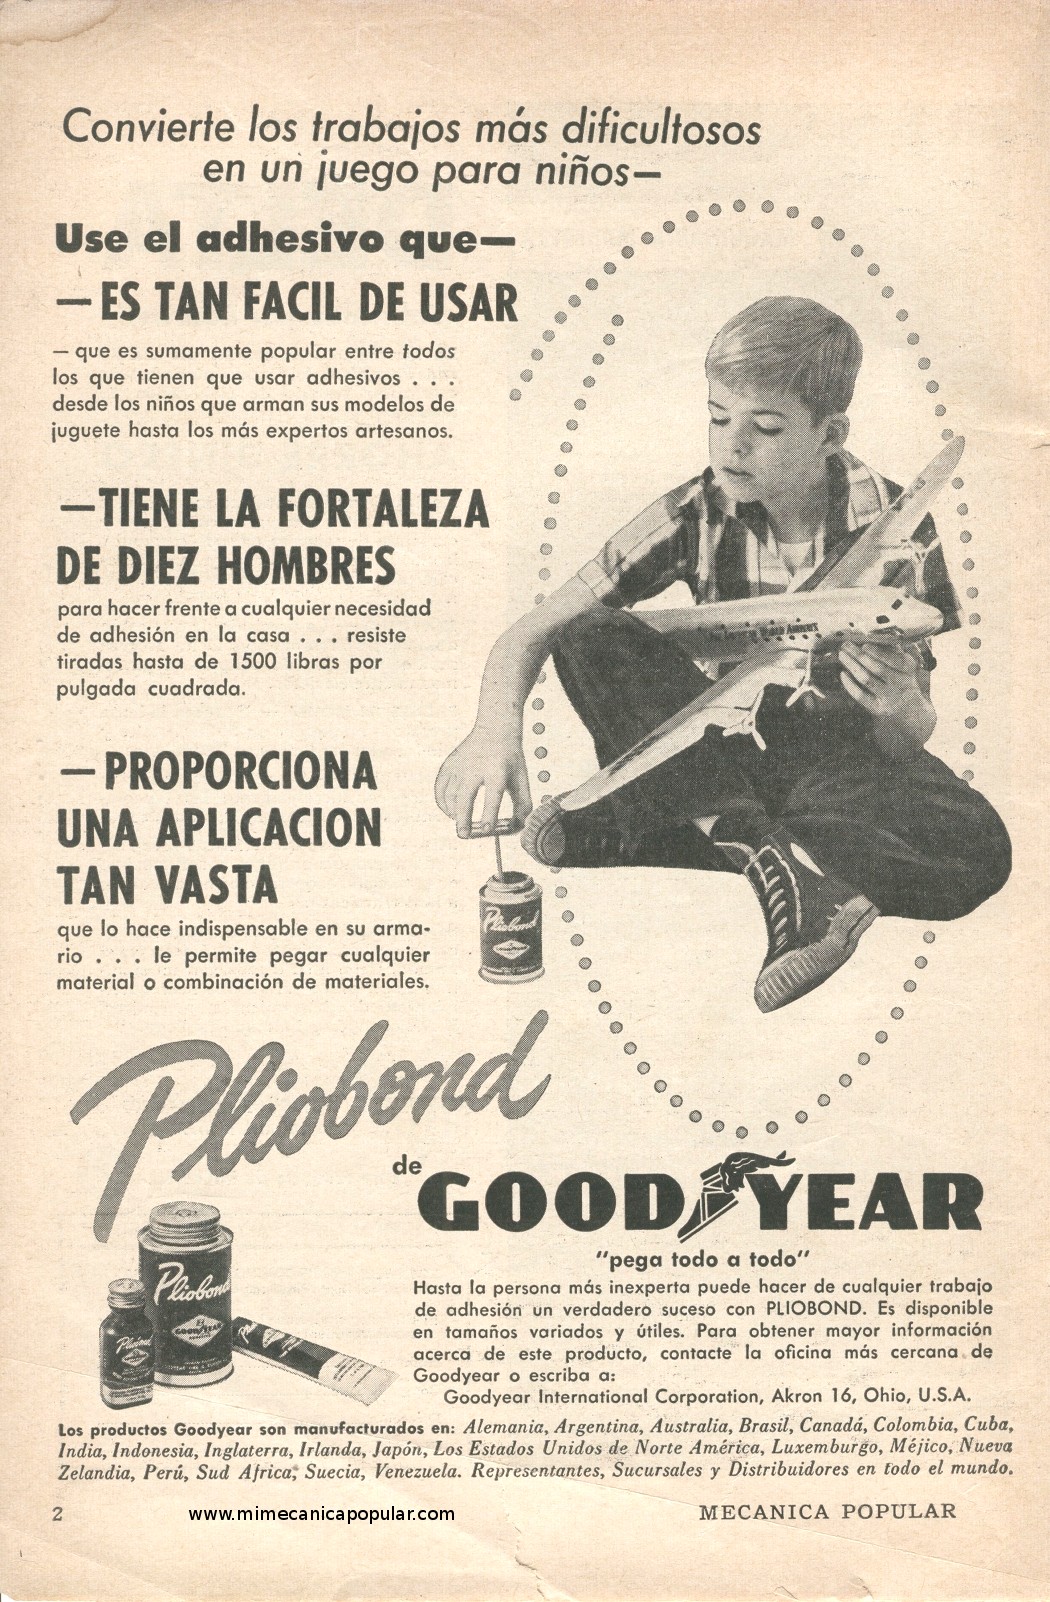 Publicidad - Adhesivo Pliobond Goodyear - Julio 1957